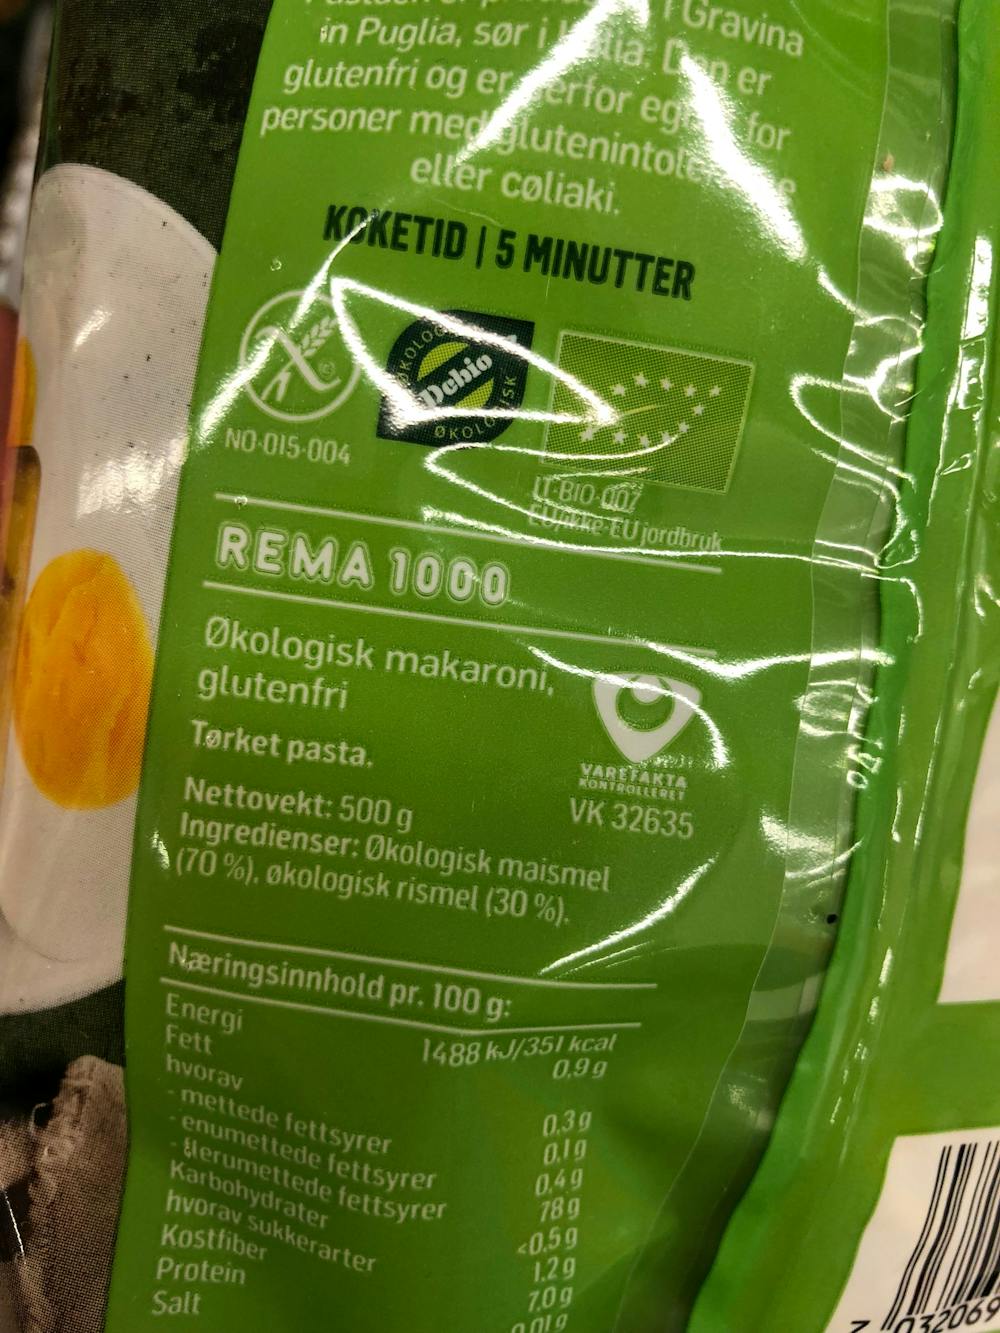 Ingredienslisten til Økologisk makaroni glutenfri, Rema 1000 üten